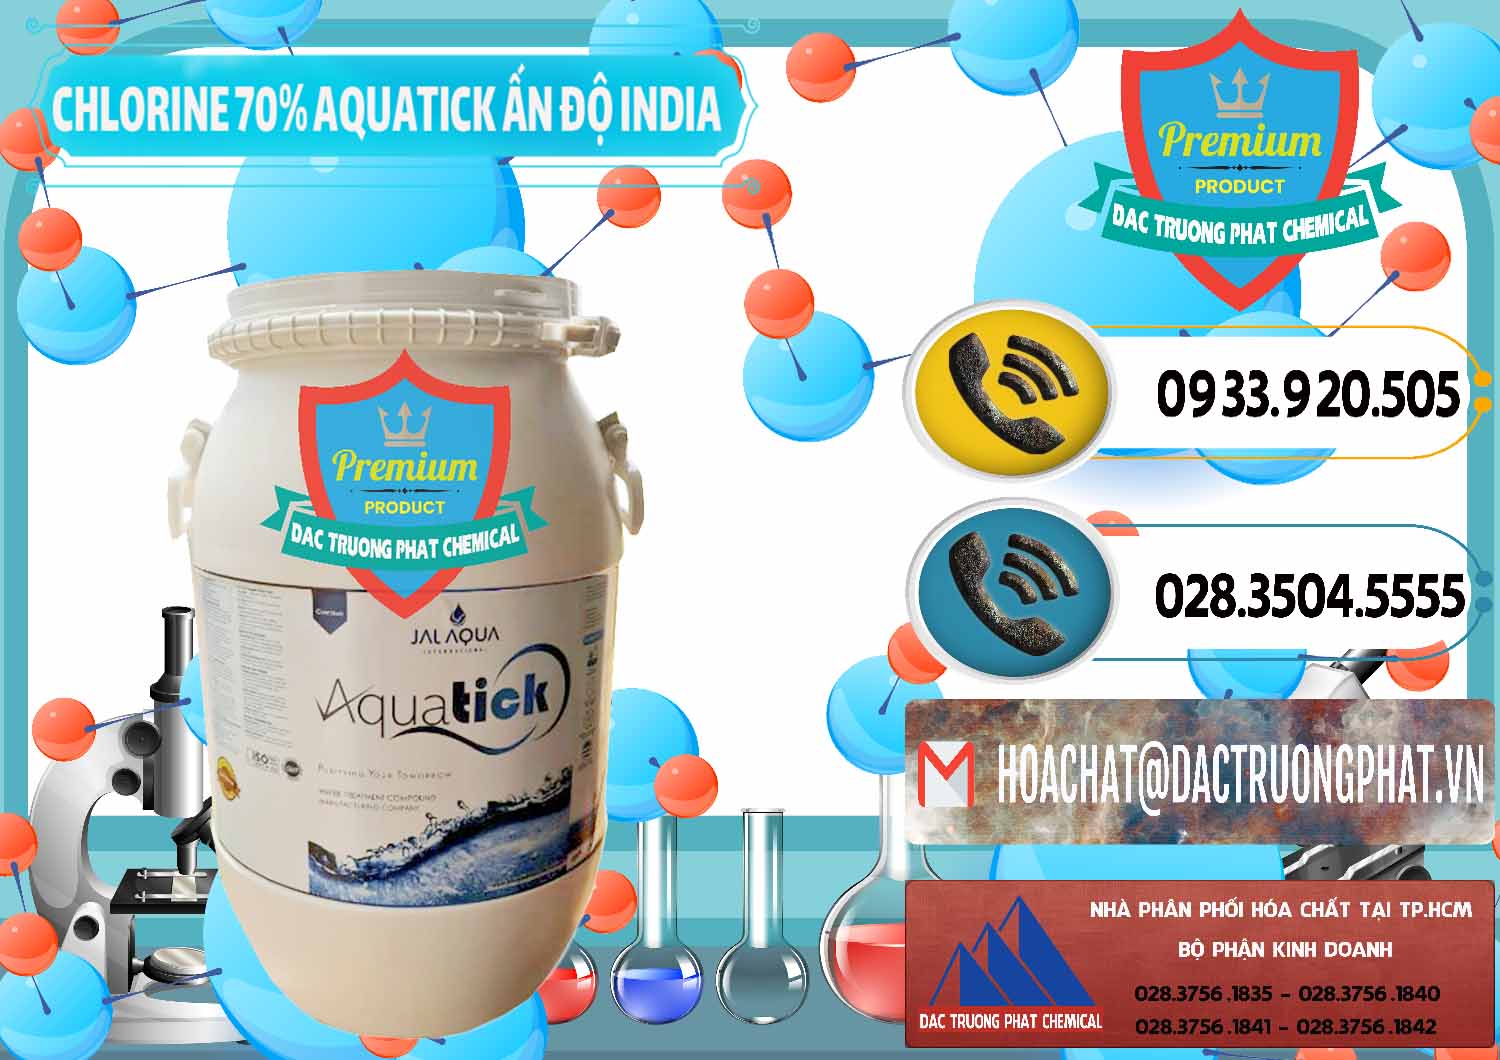 Đơn vị chuyên cung cấp ( bán ) Chlorine – Clorin 70% Aquatick Jal Aqua Ấn Độ India - 0215 - Bán _ cung cấp hóa chất tại TP.HCM - hoachatdetnhuom.vn